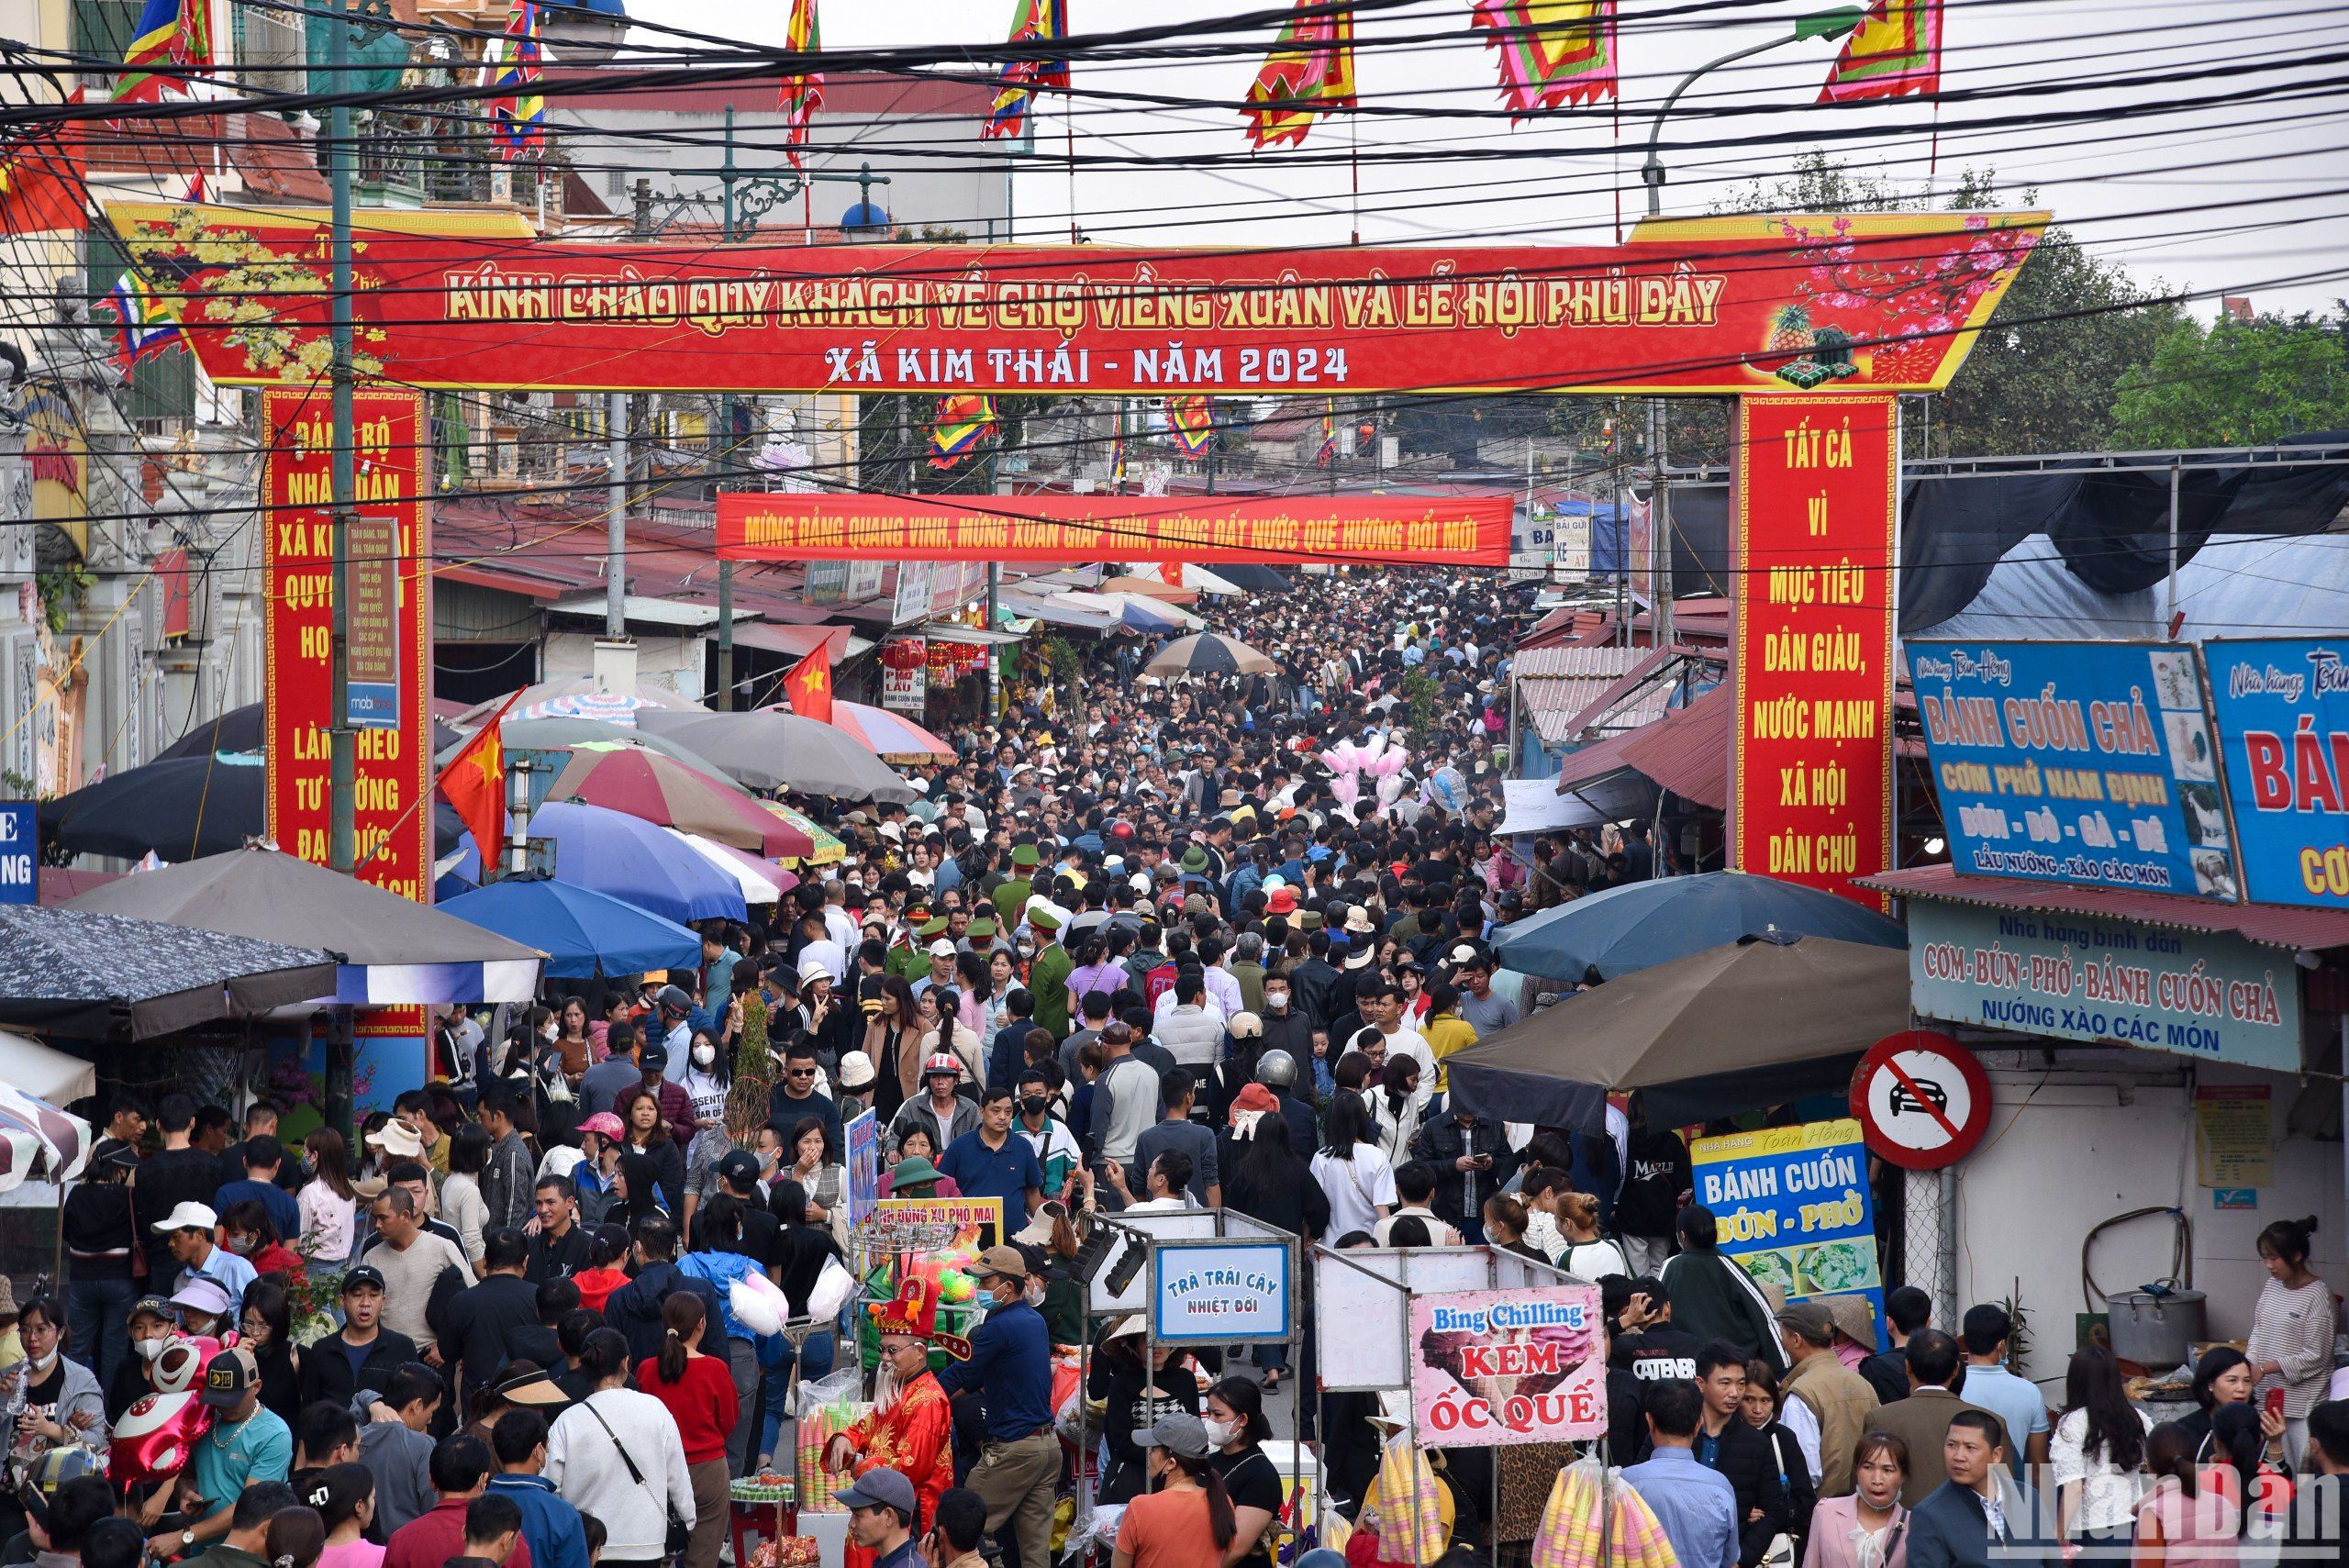 Hàng ngàn người đổ về chợ Viềng từ sớm để mua may, bán rủi đầu năm